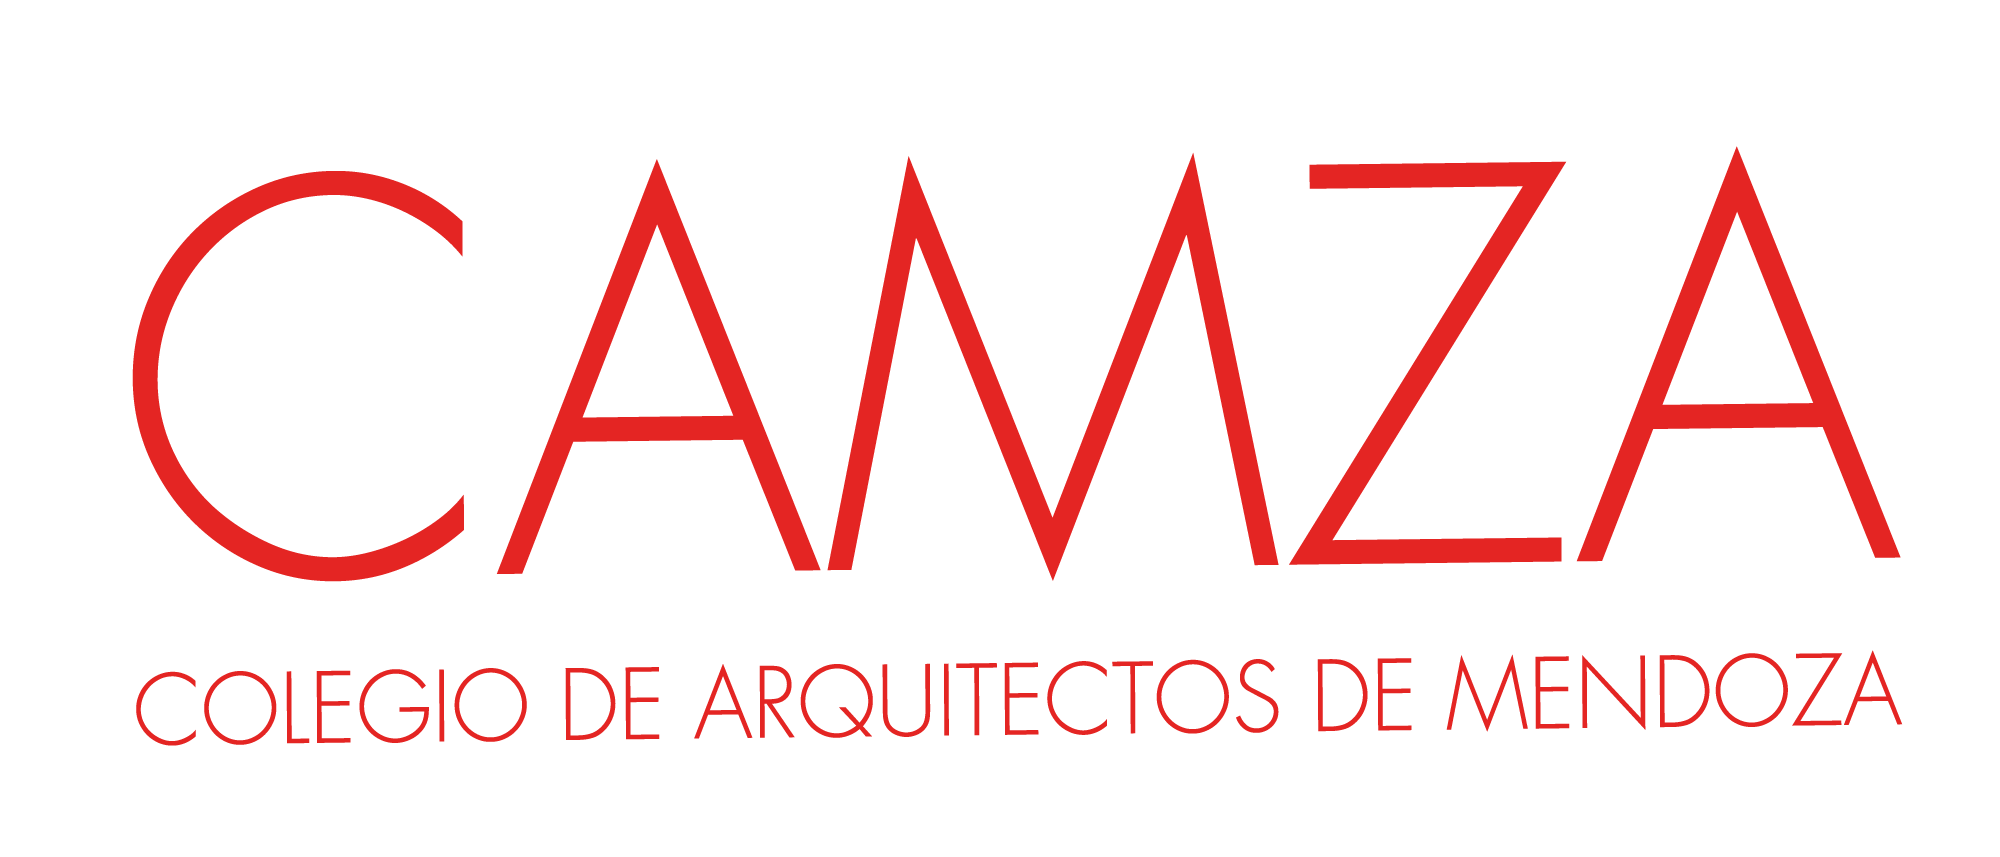 Colegio de Arquitectos de Mendoza